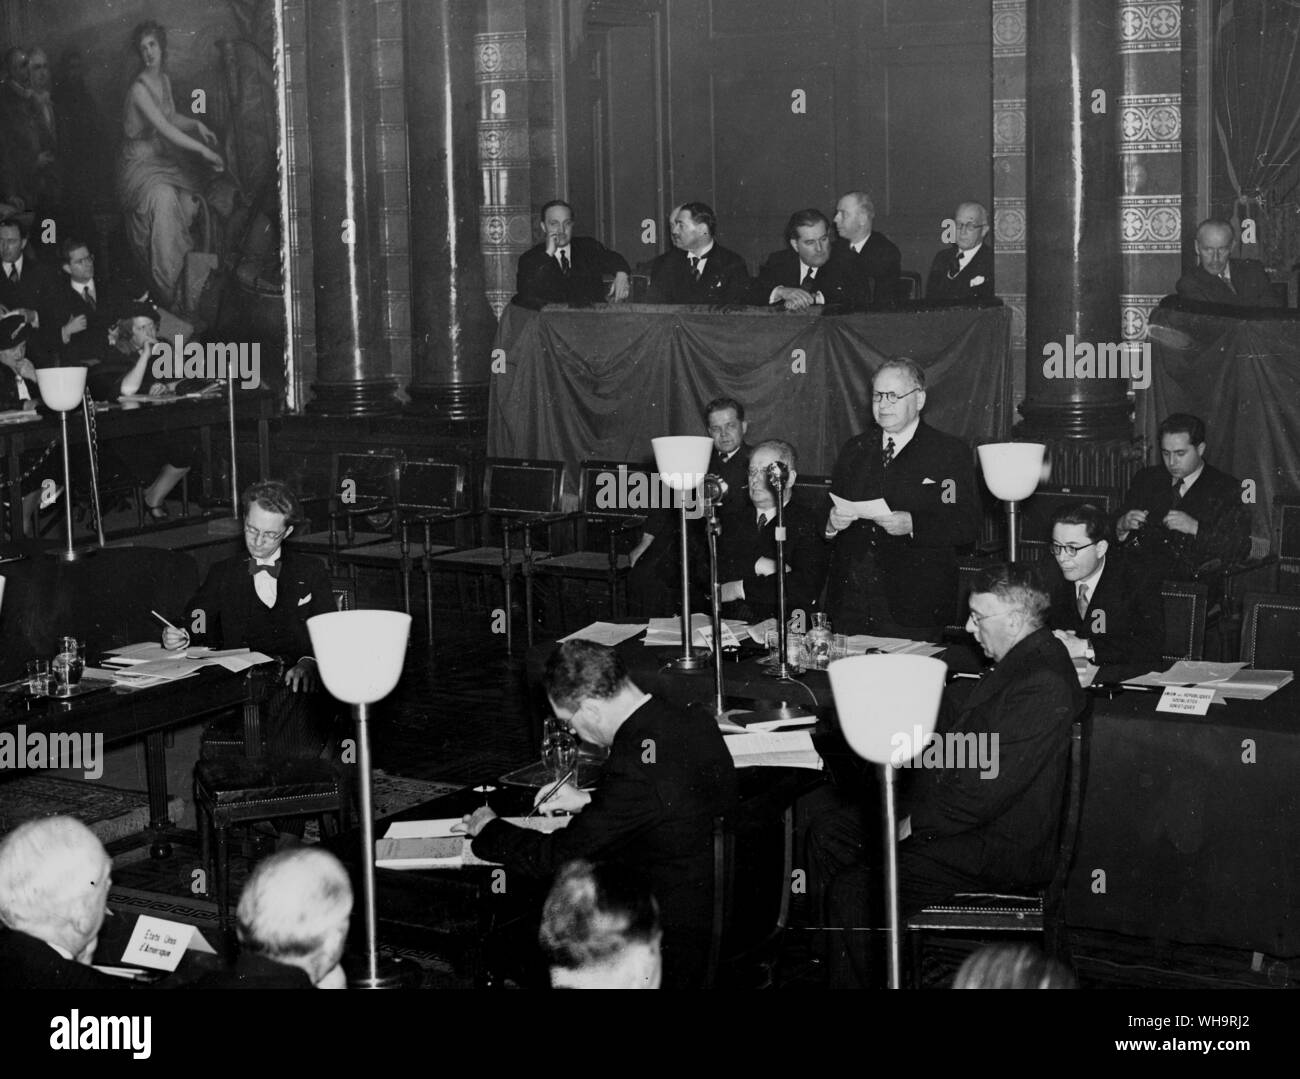 4 nov. 1937: Litvinoff, leader dei delegati russi parlando alla conferenza di Bruxelles. Foto Stock